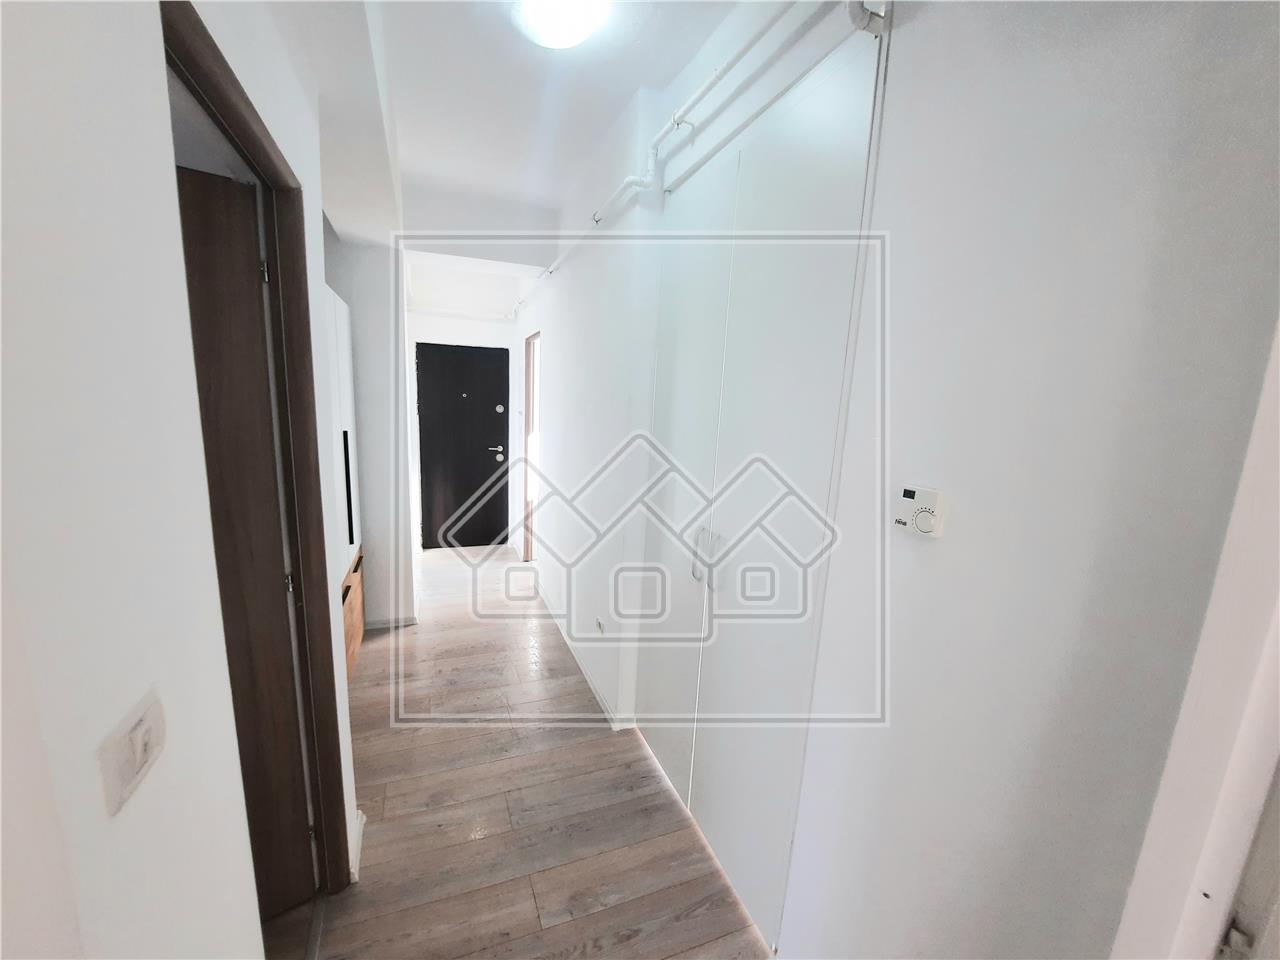 Apartament de vanzare in Alba Iulia - 2 camere - 68 mp - zona Ampoi 3